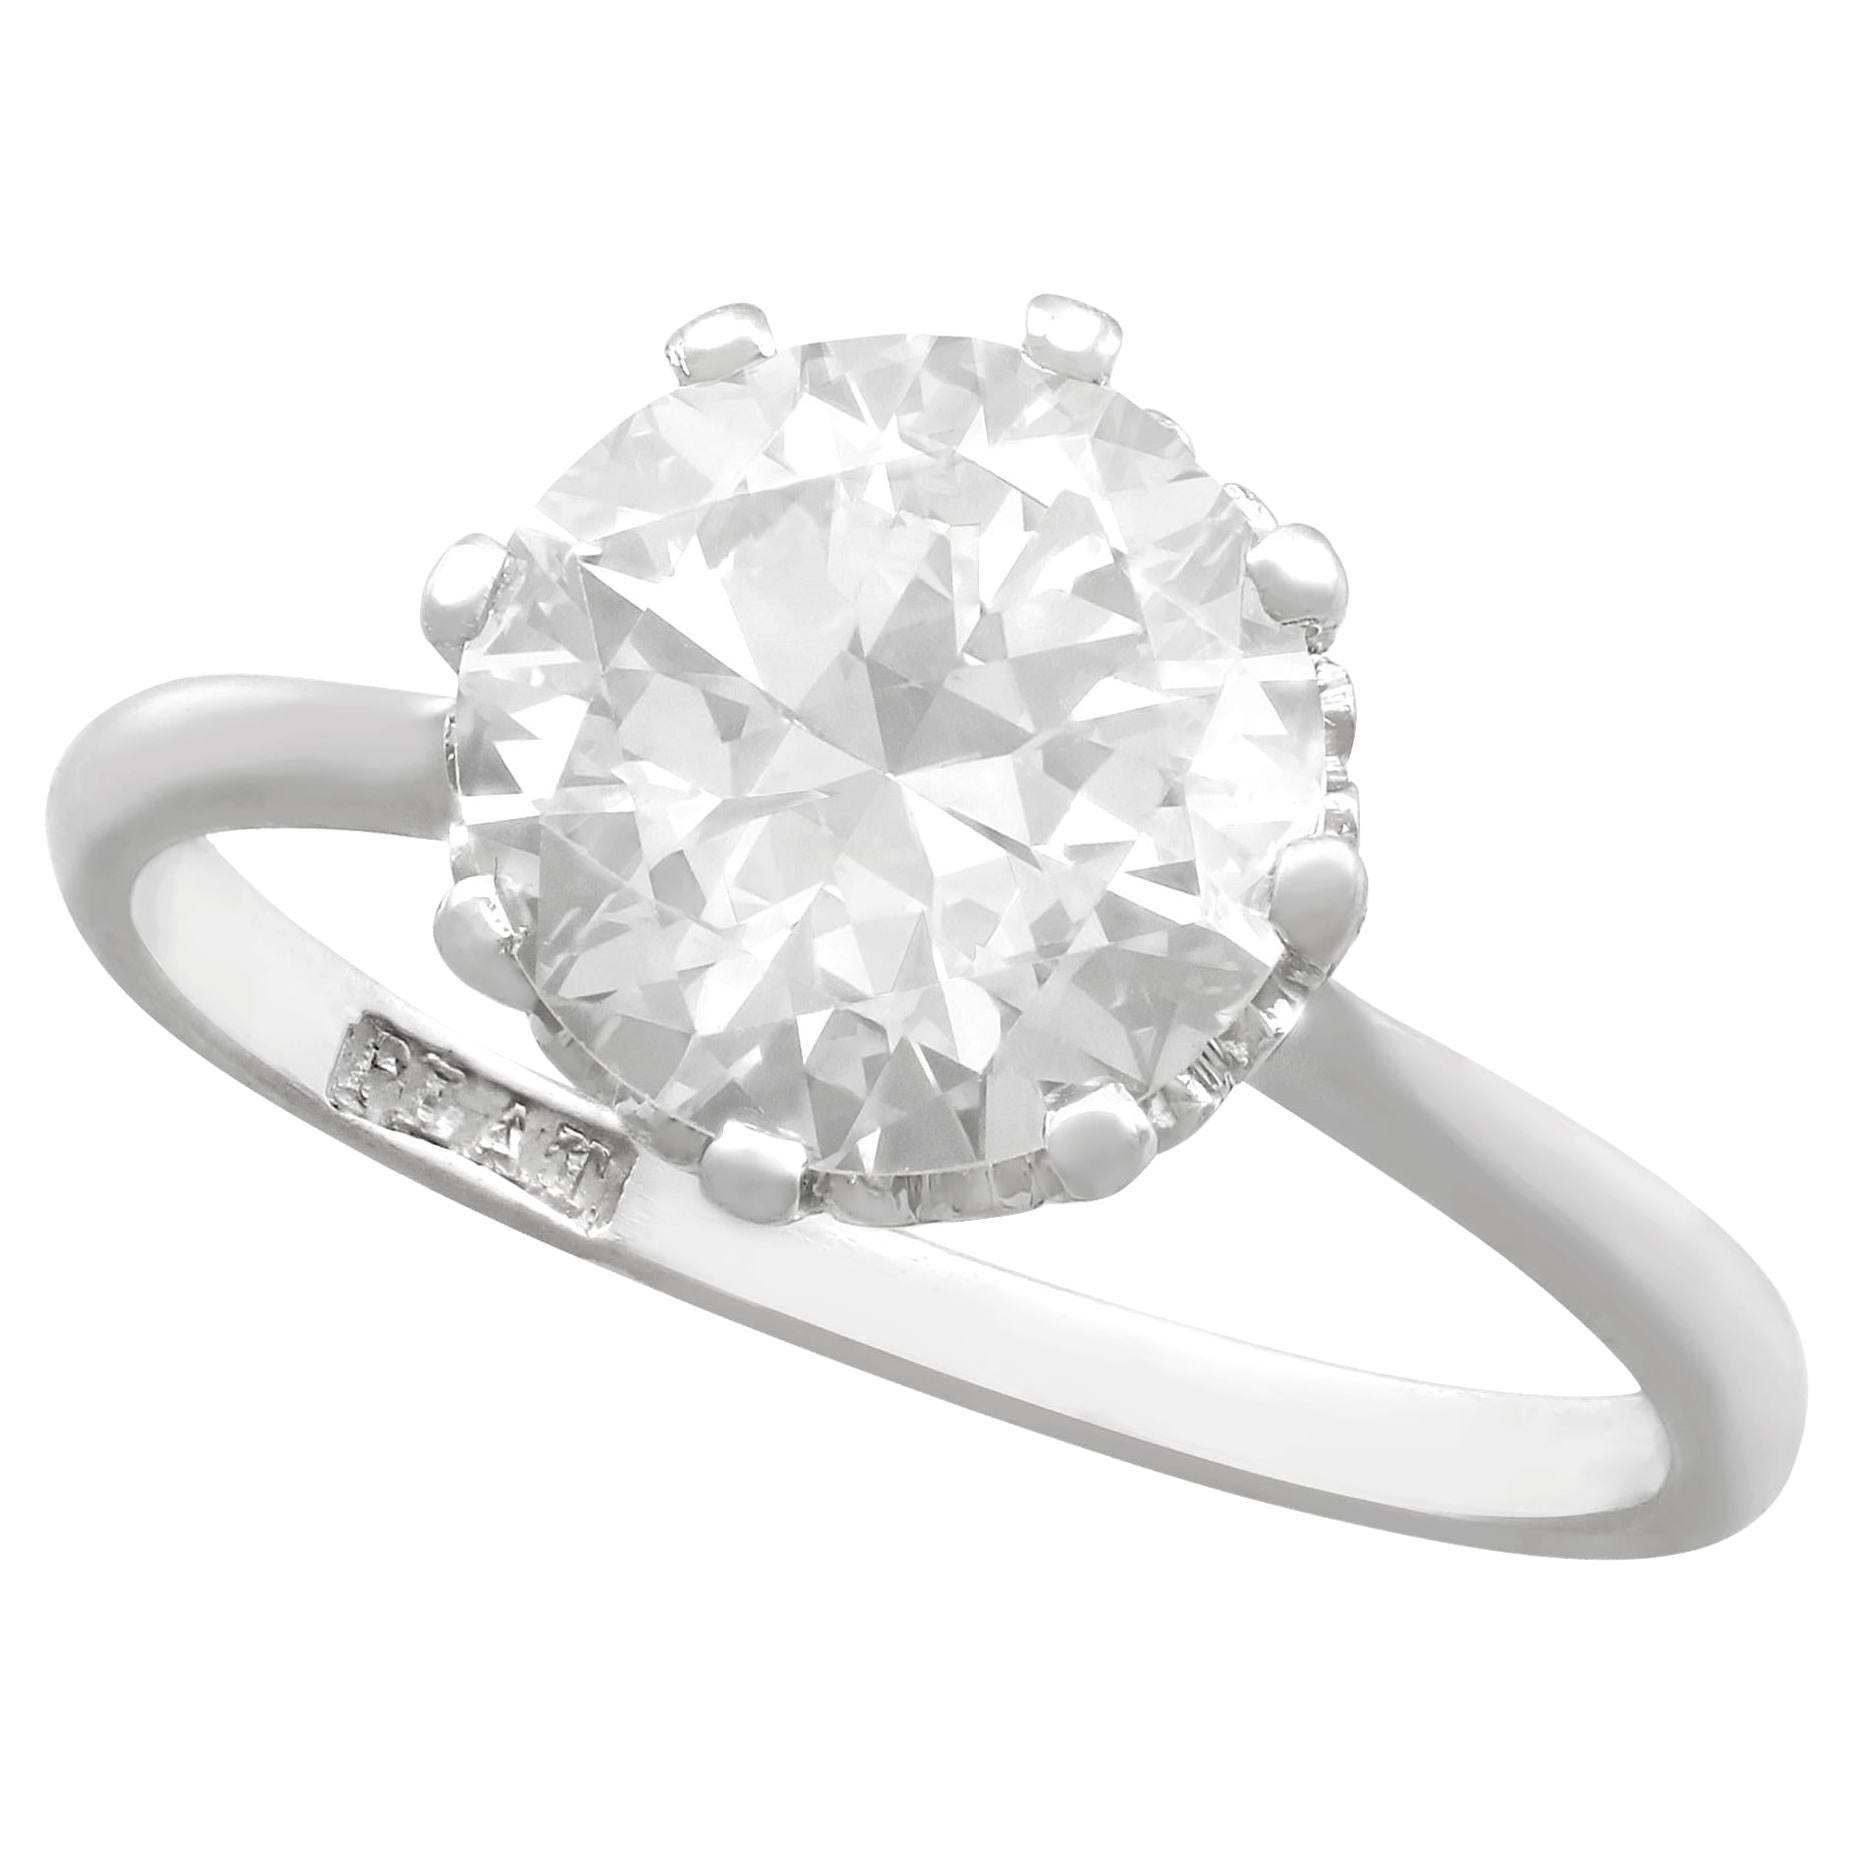 1940s 2.01 Carat Diamond and Platinum Solitaire Ring